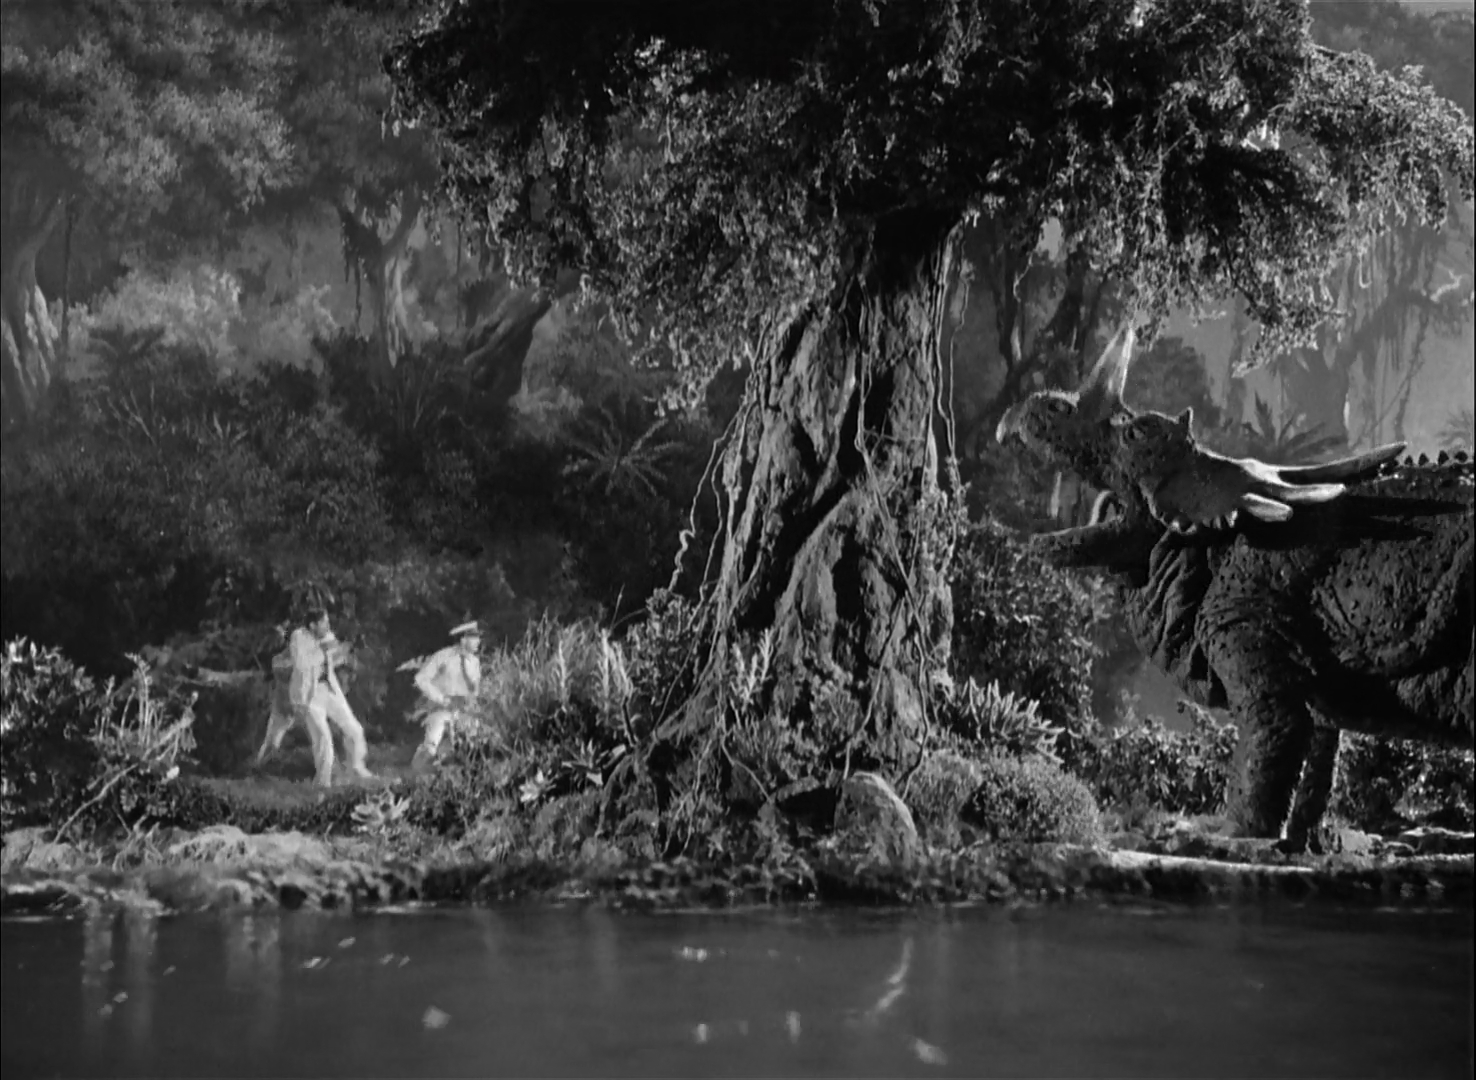 The Son of Kong |1933|1080p|Mega